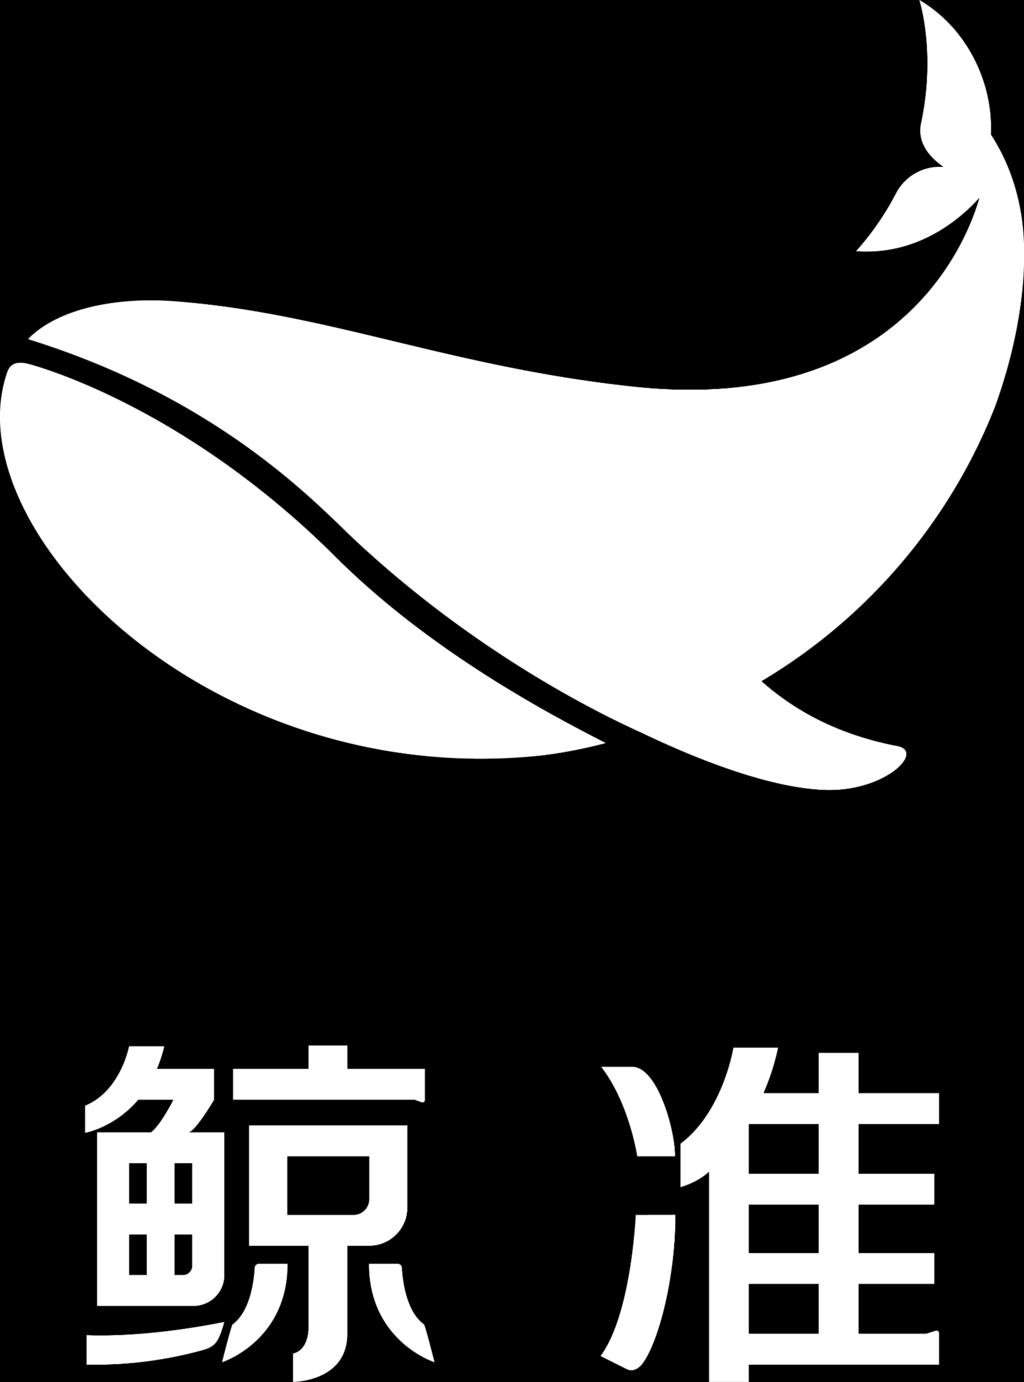 科技成就价值投资 扫码下载鲸准 APP 鲸准是北京创业光荣信息科技有限责任公司运营的